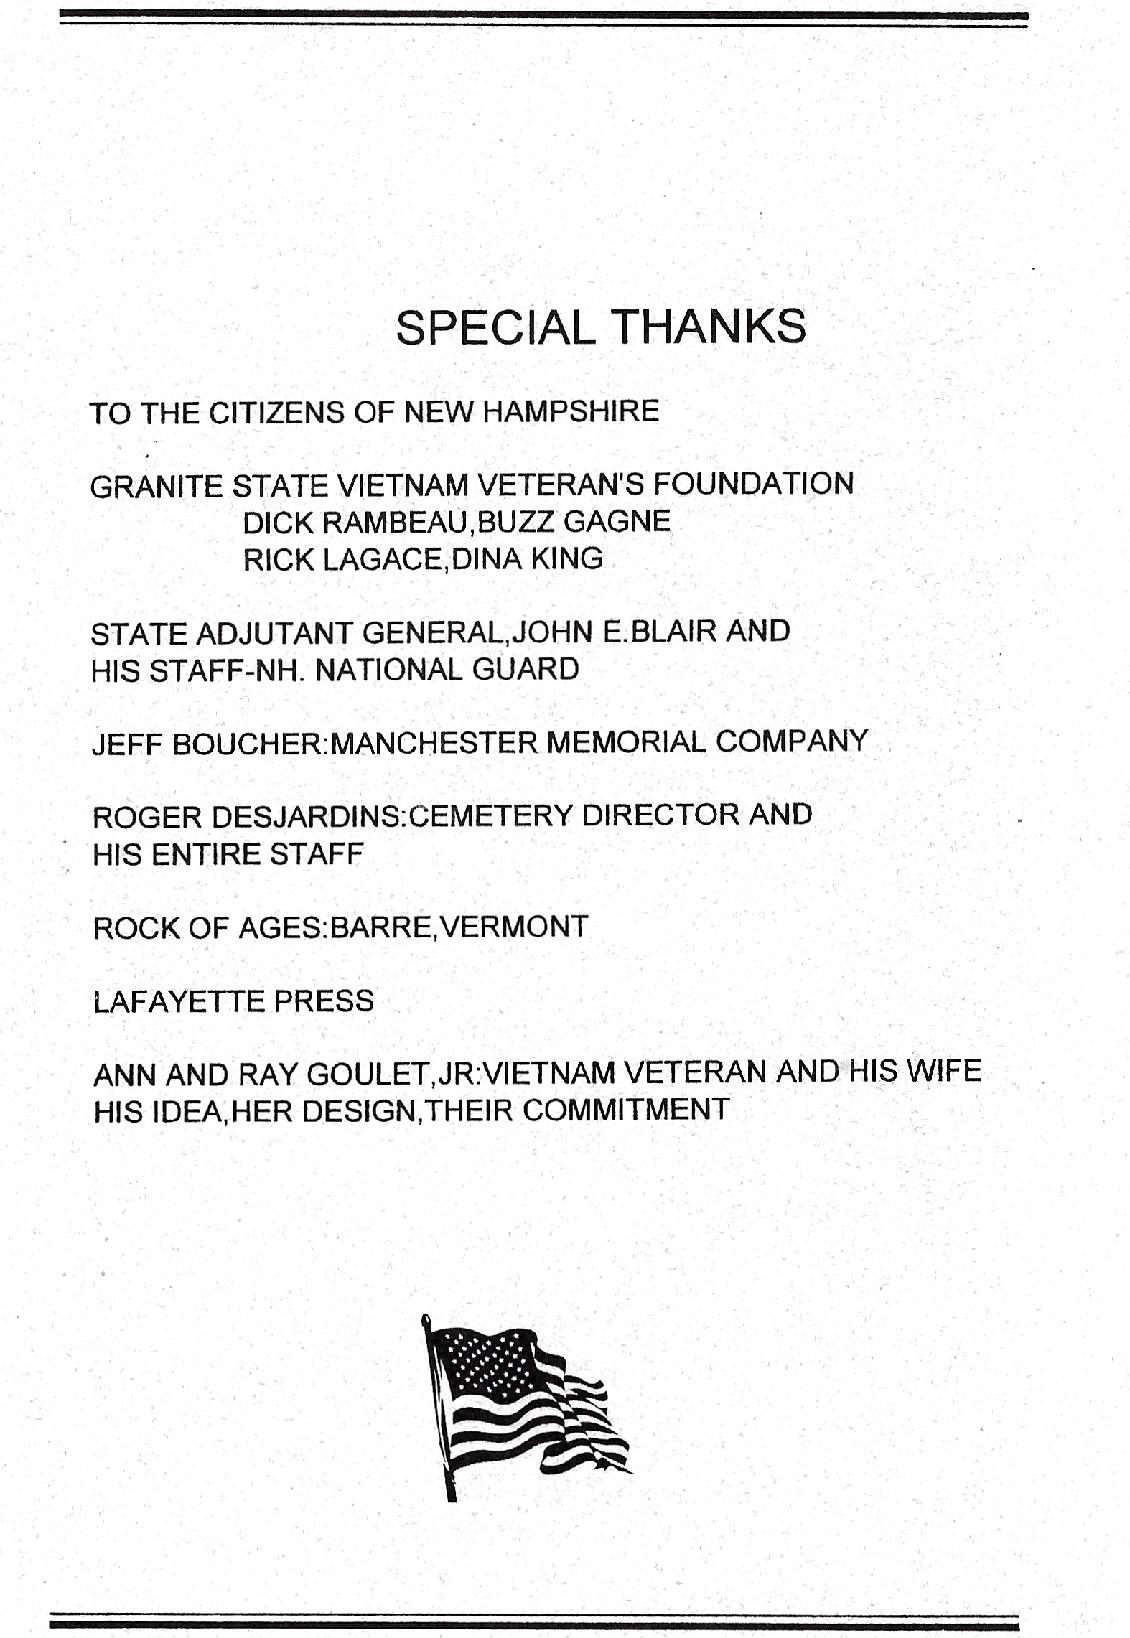 NH Vietnam War Memorial Dedication May 22 2004